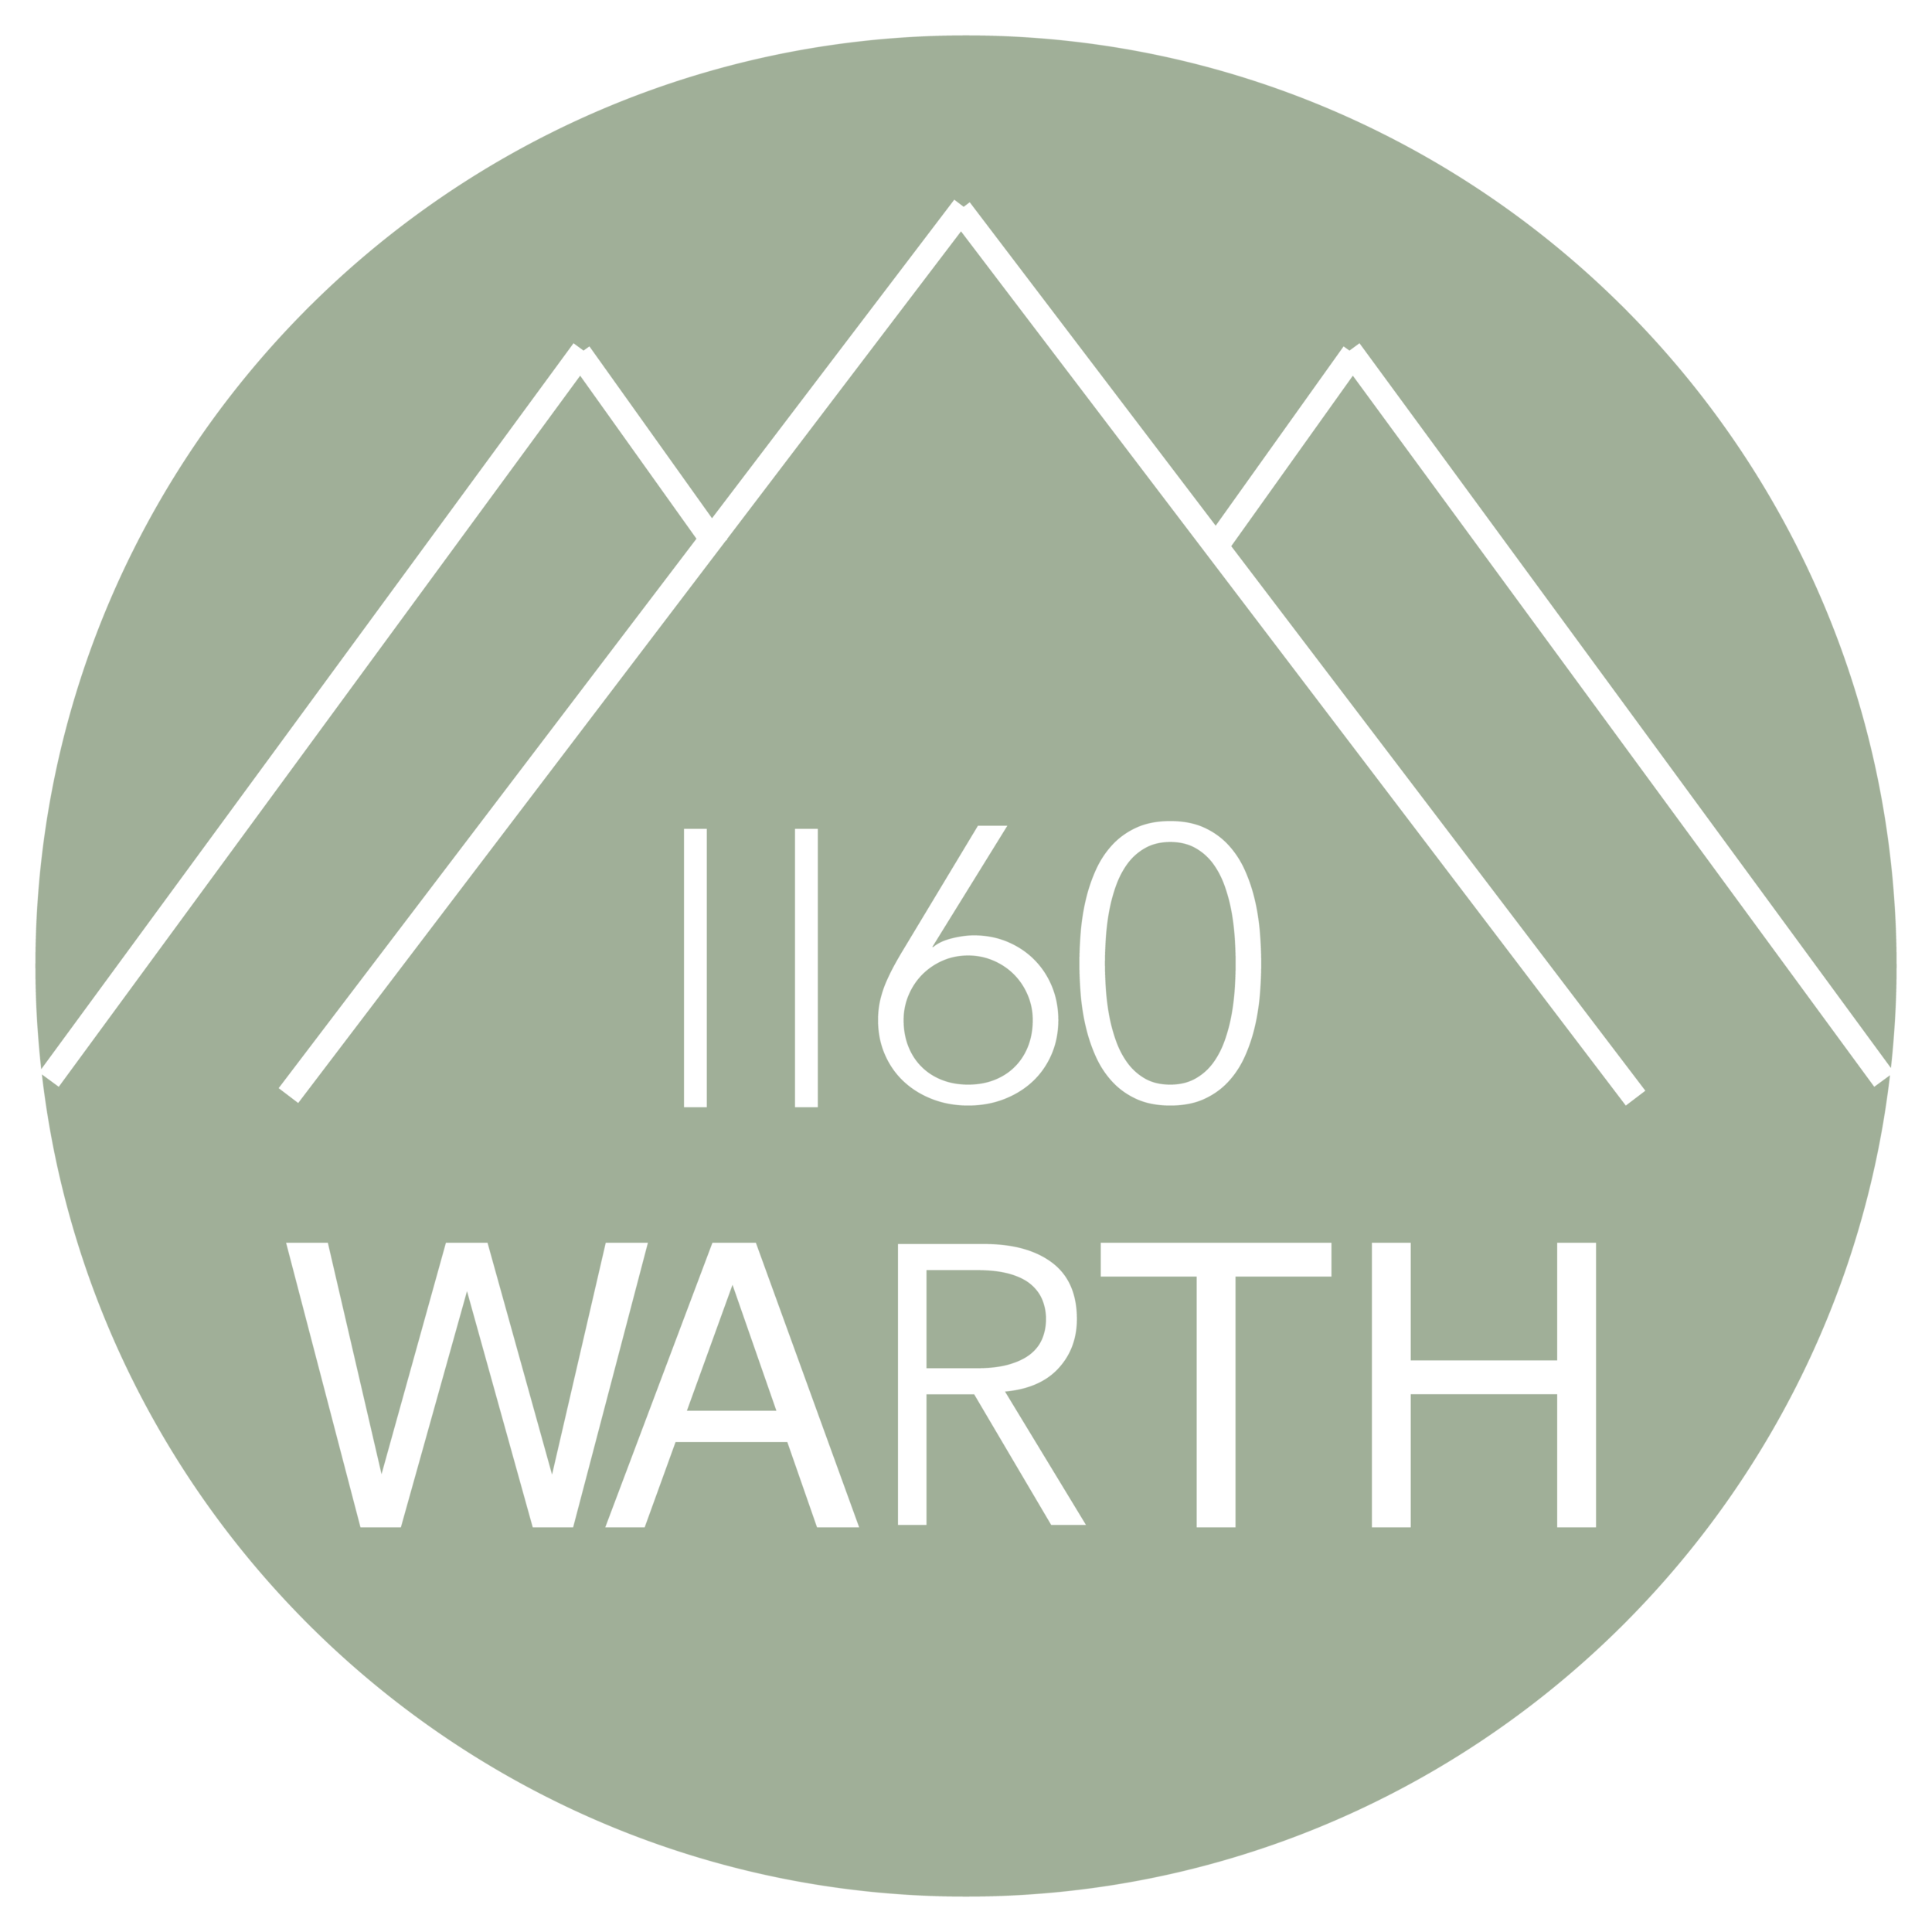 WARTH 1160